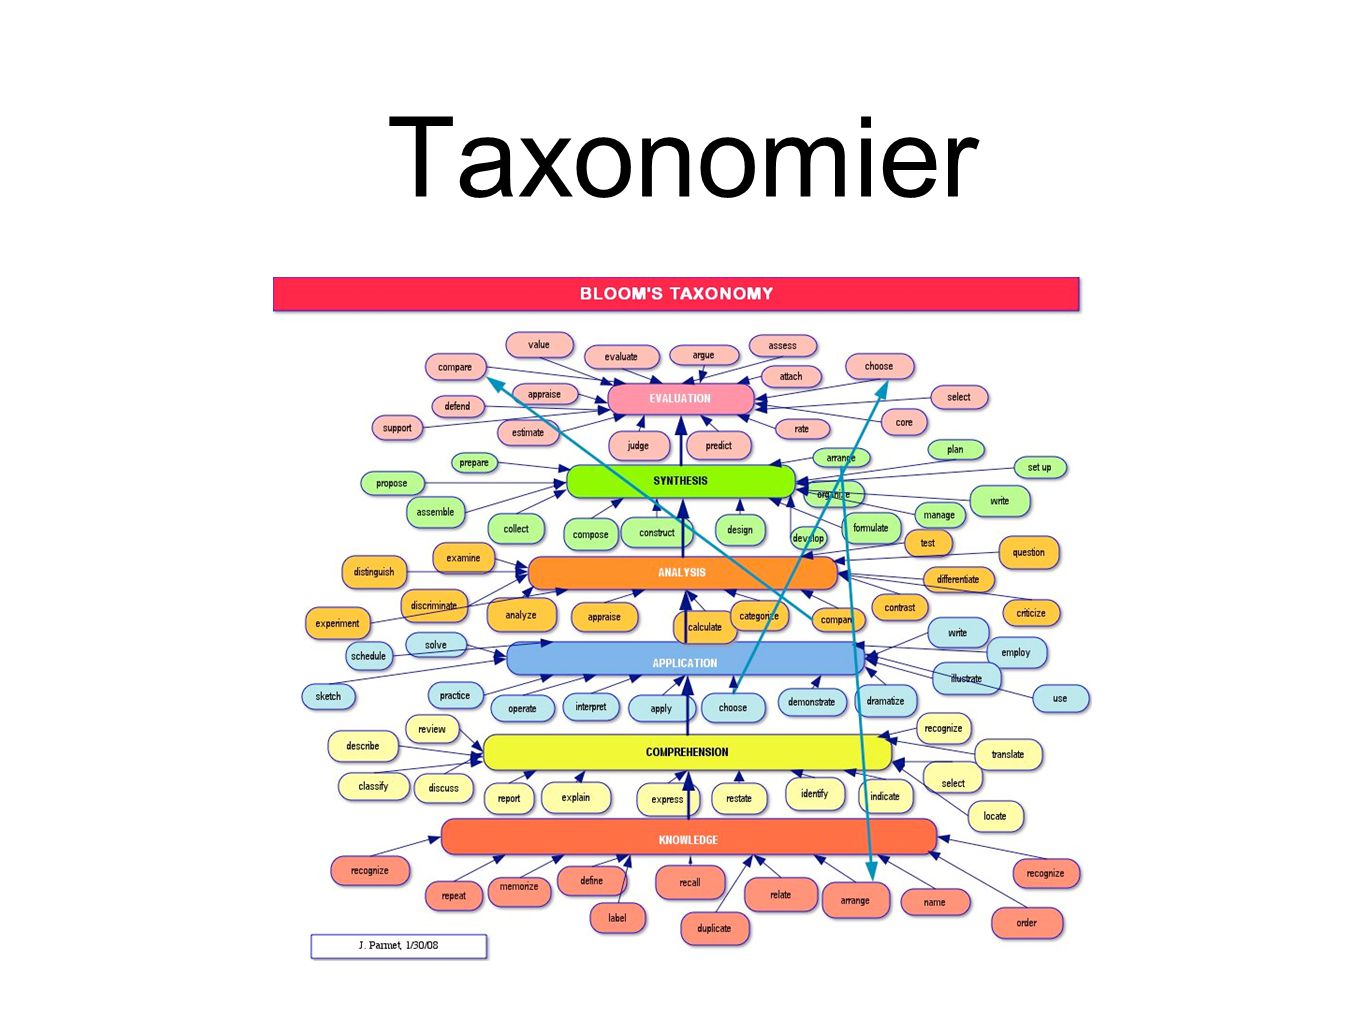 Taxonomier